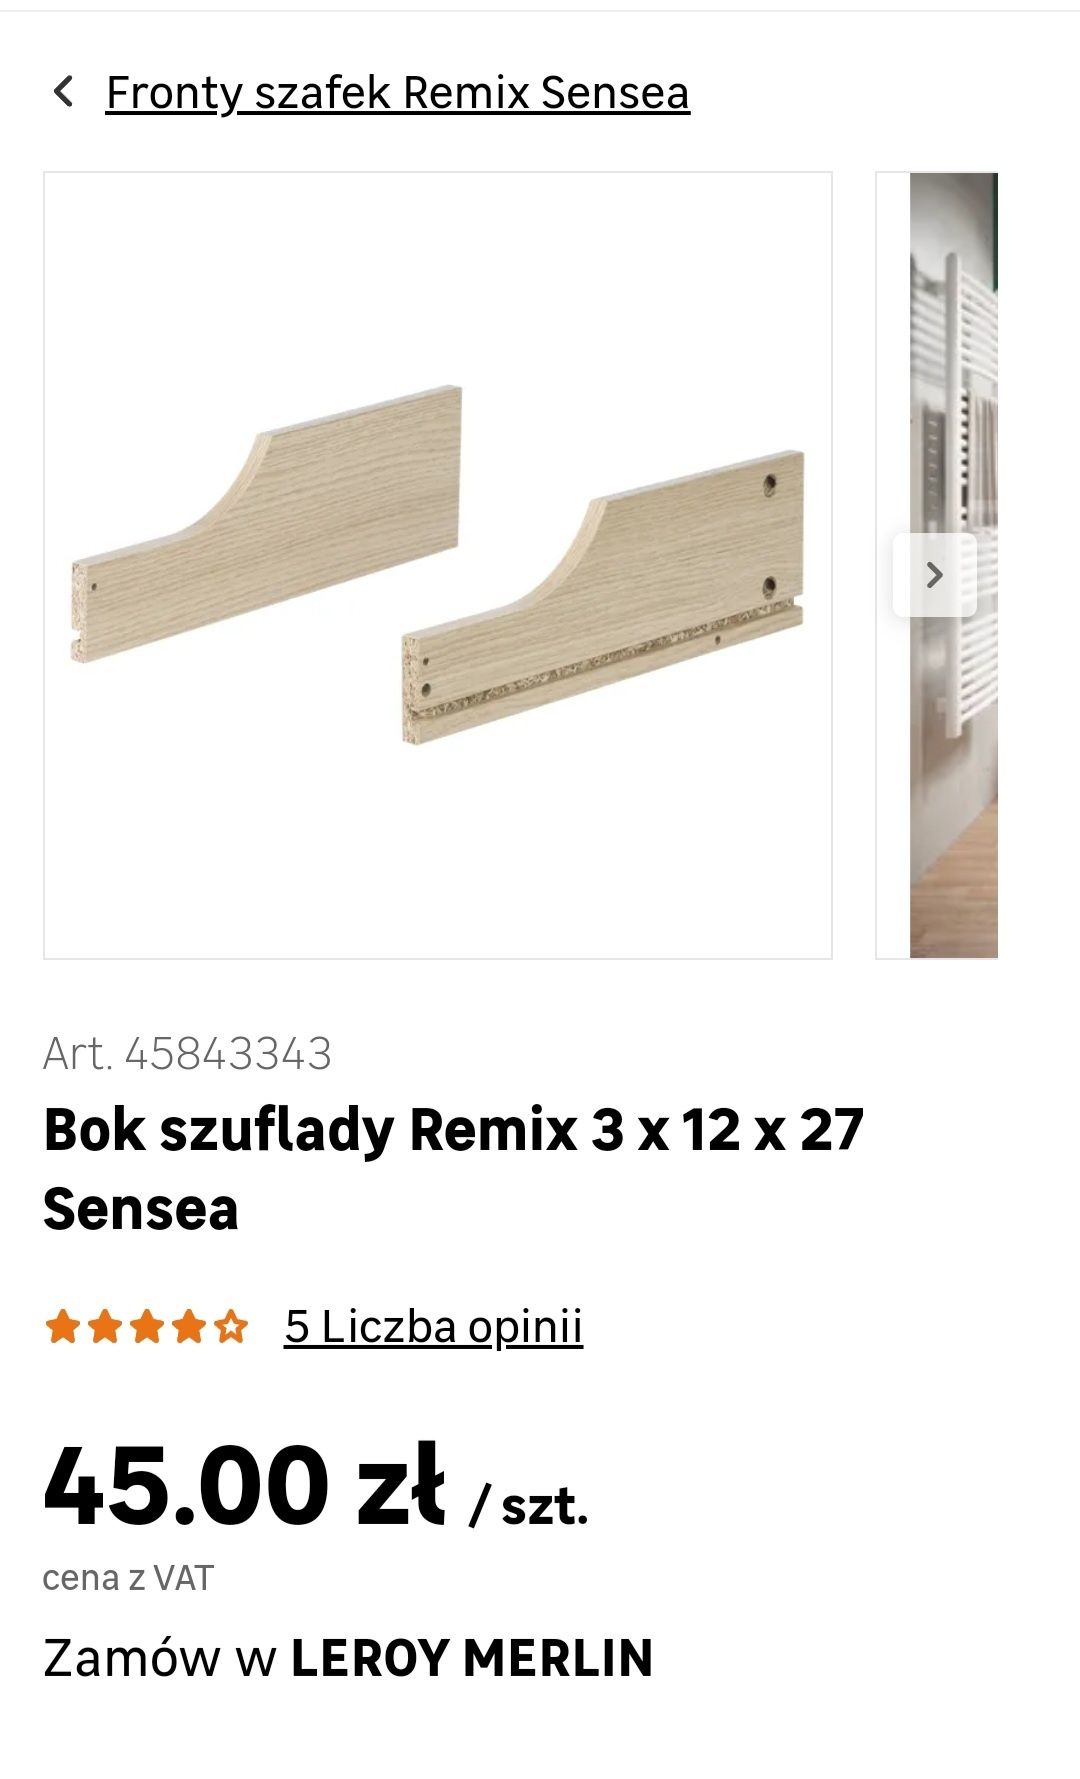 Bok szuflady Remix Sensea Leroy Merlin